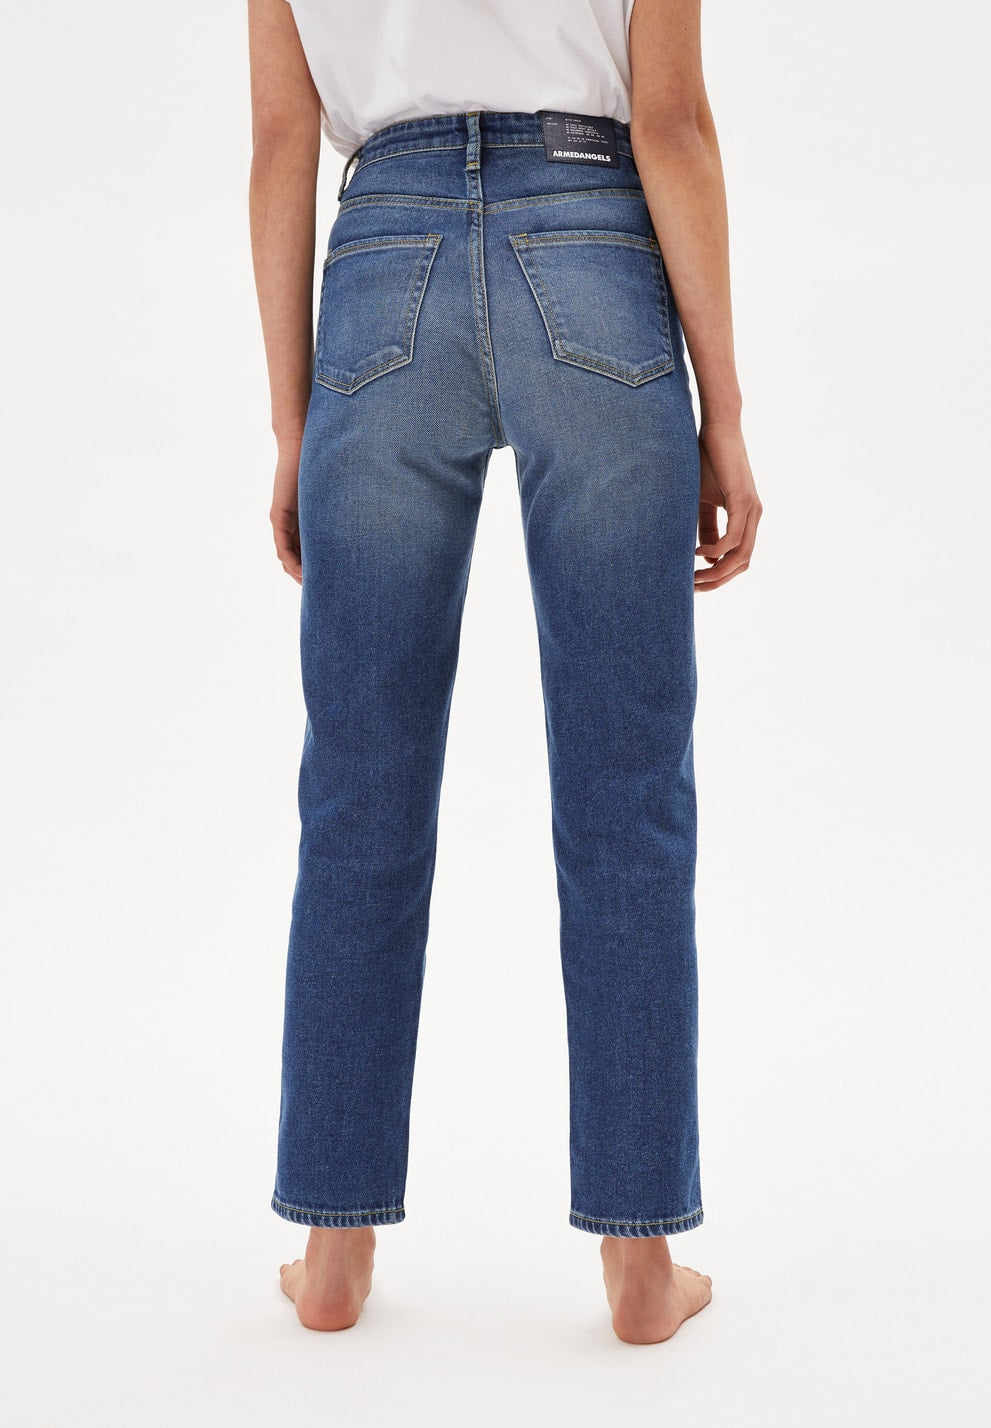 Jeans LEJAANI slim fit dark  | ARMEDANGELS